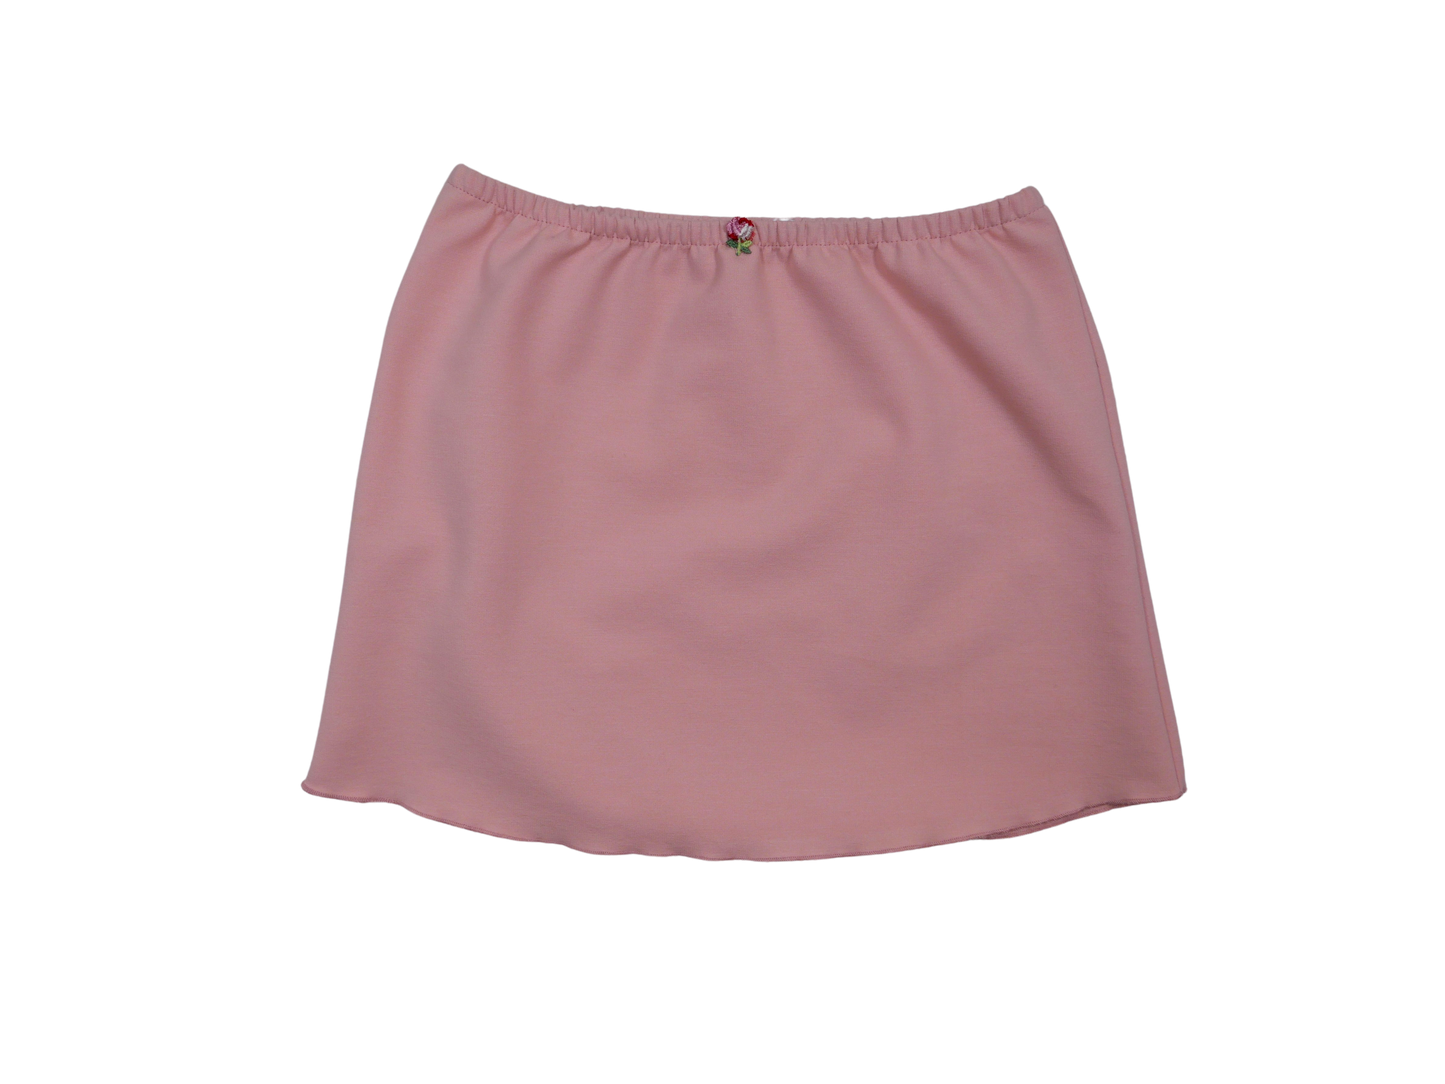 Rose Skirt in Pointe